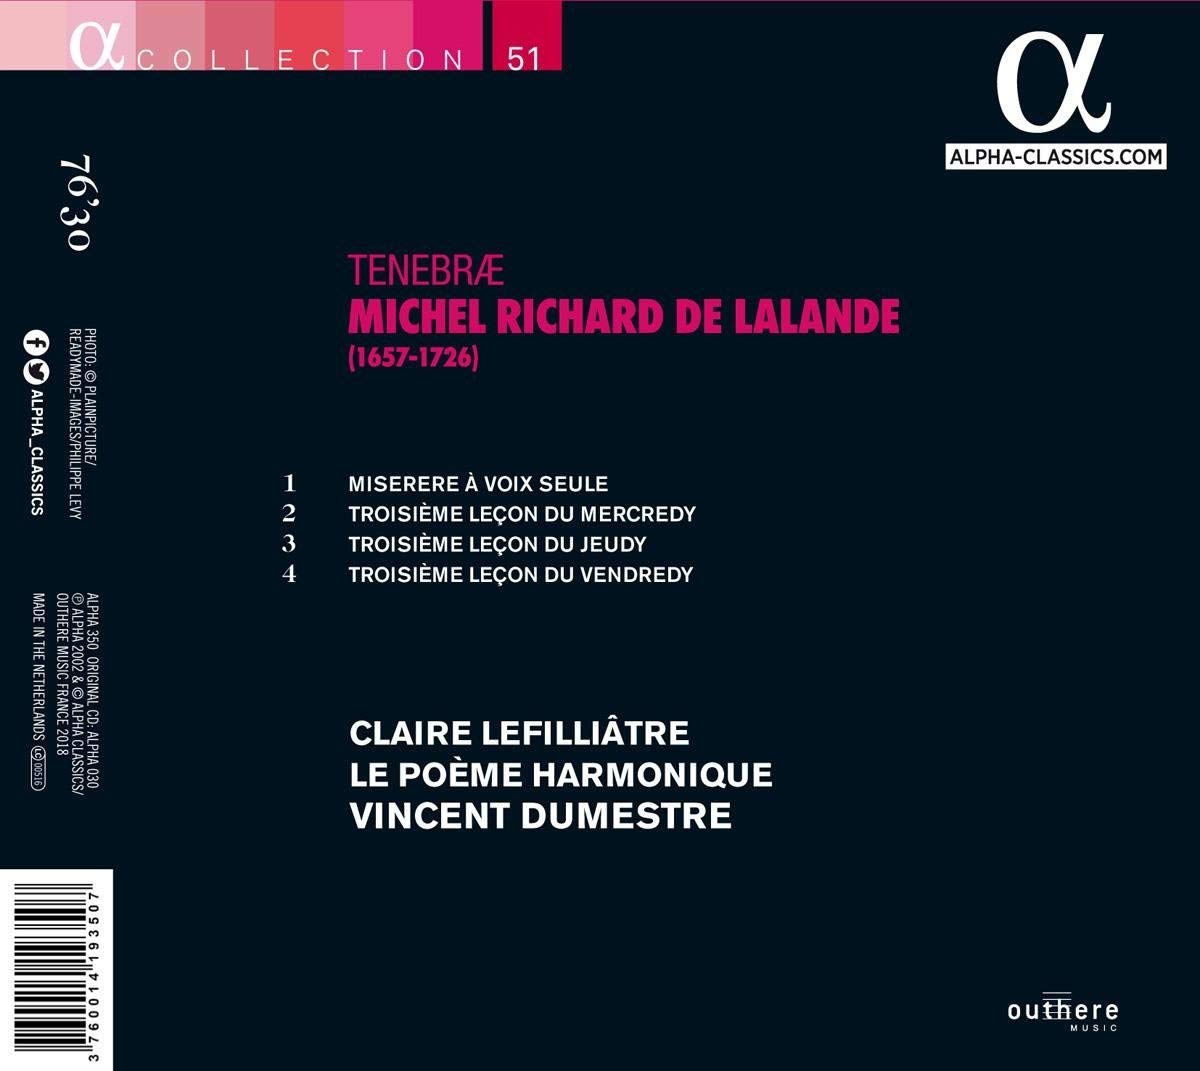 Claire Lefilliatre 라랑드: 테네브레 (Lalande: Tenebrae) 클레르 르필리아트르